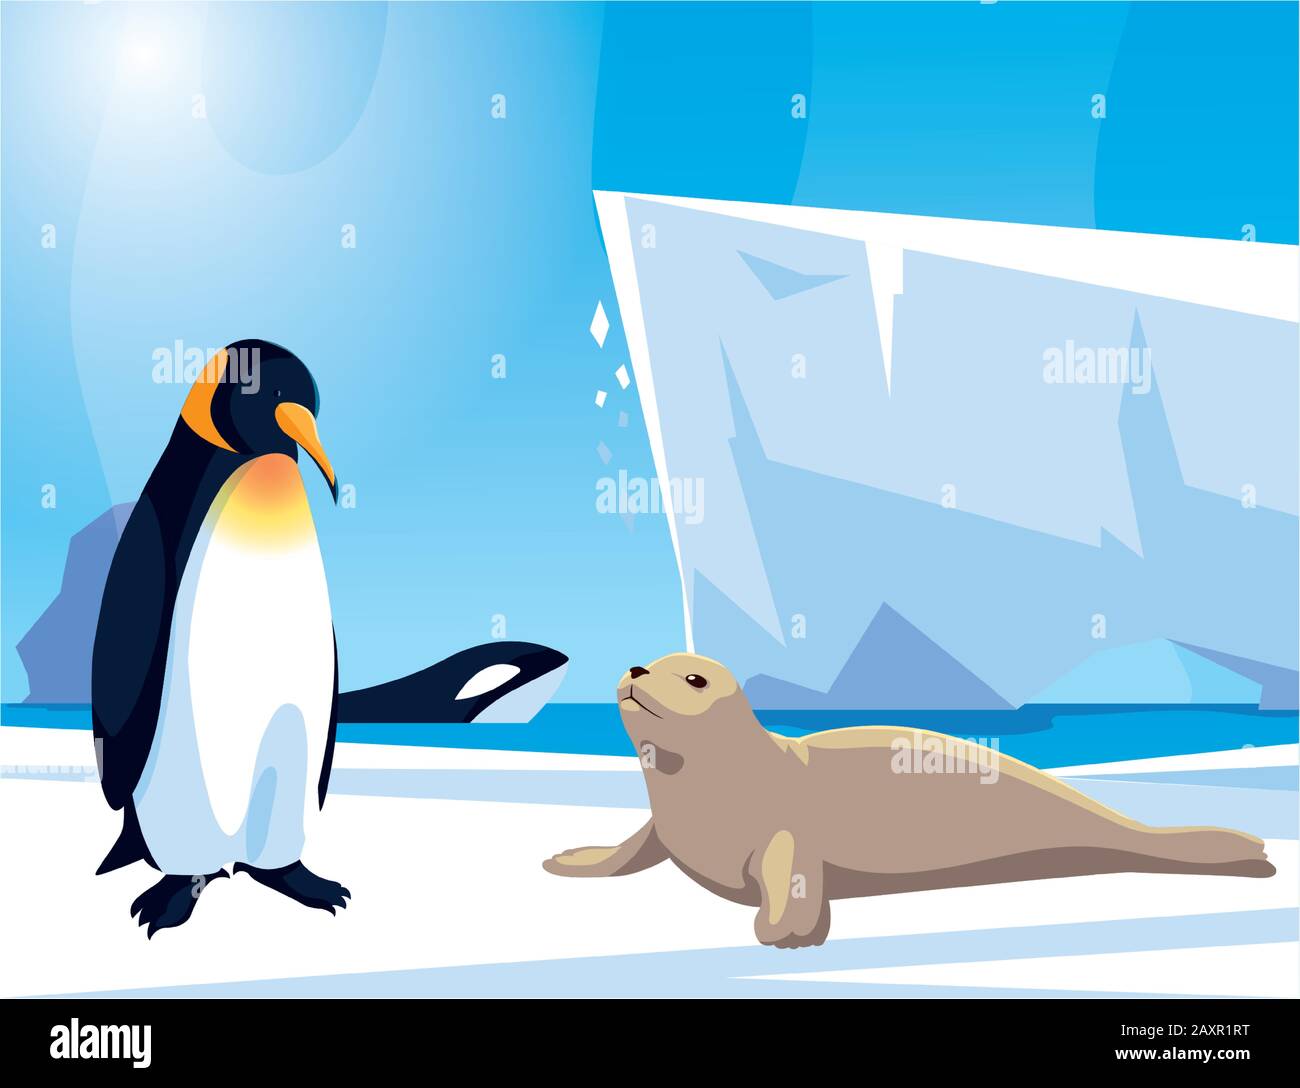 Arktische Tiere am Nordpol, arktisches  Landschaftsvektor-Illustrationsdesign Stock-Vektorgrafik - Alamy